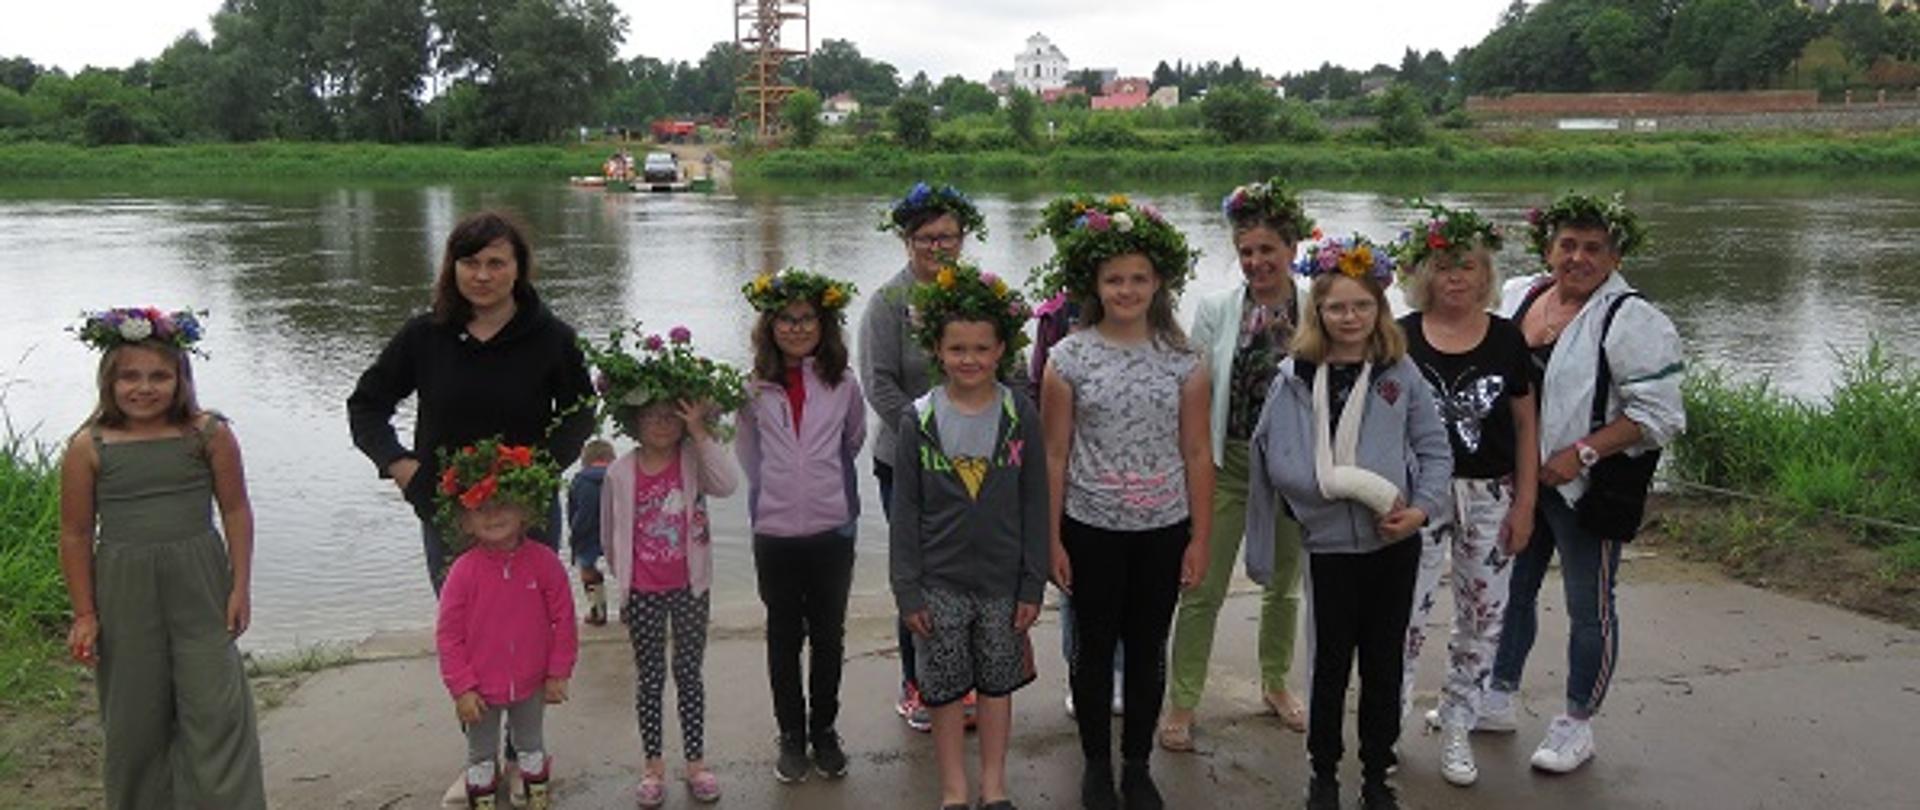 W tle rzeka. Na pierwszym planie grupa kobiet i dzieci z wiankami z kolorowych kwiatów na głowach.